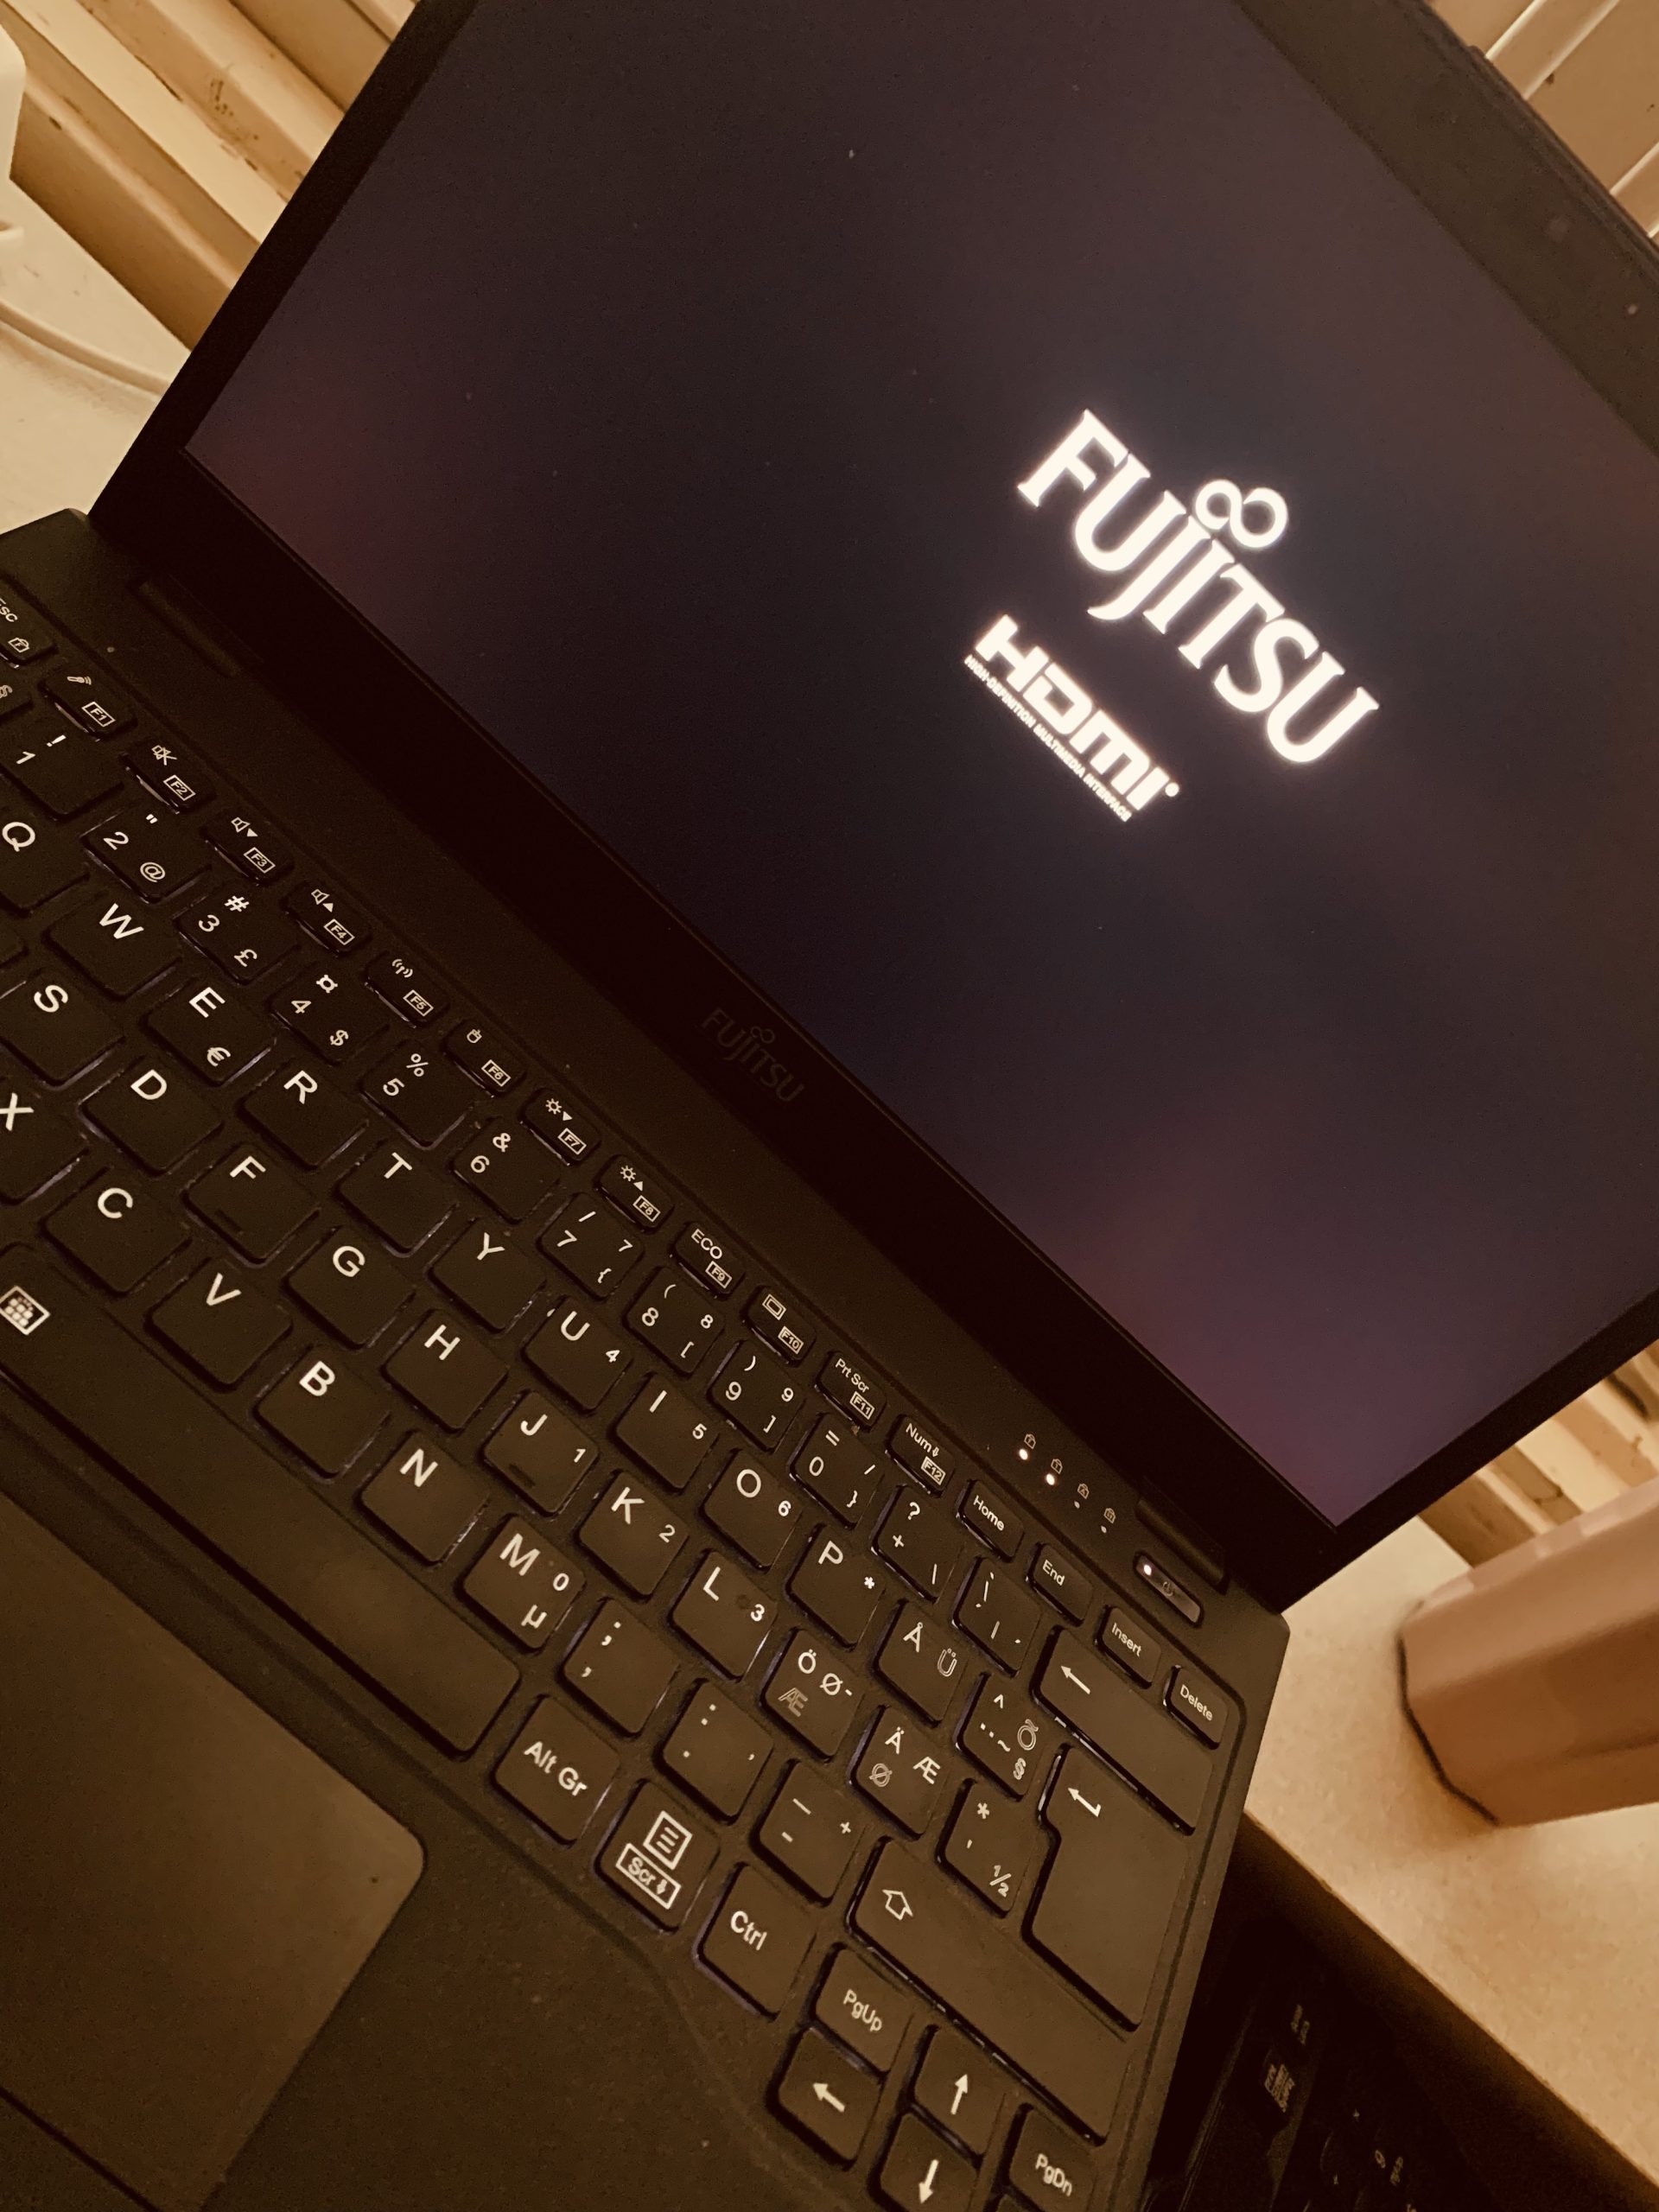 Fujitsu computer